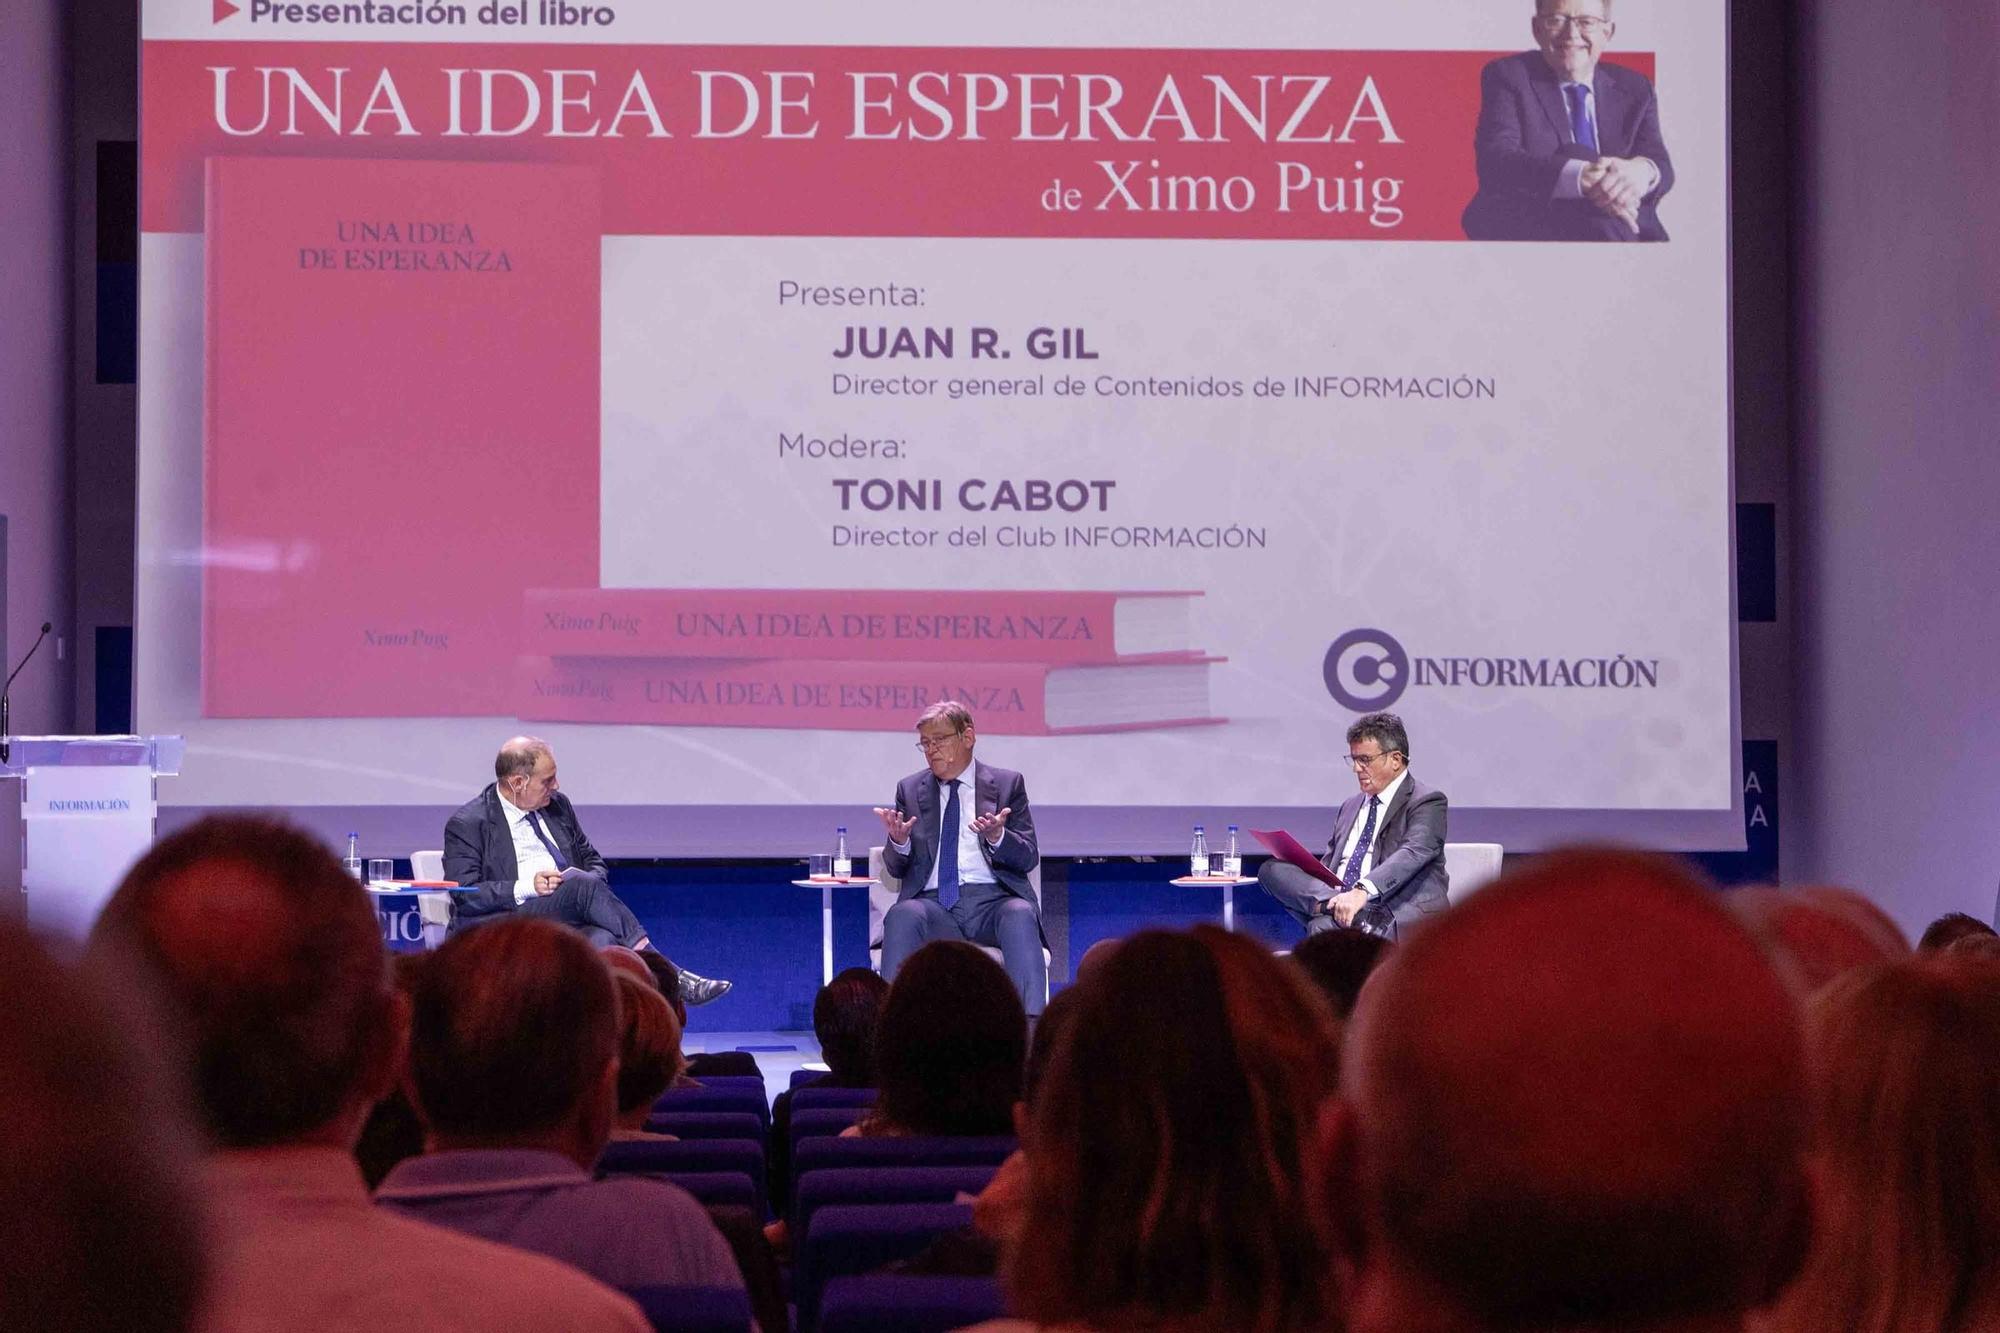 Presentación del libro de Ximo Puig "Una Idea de esperanza" en el Club Información